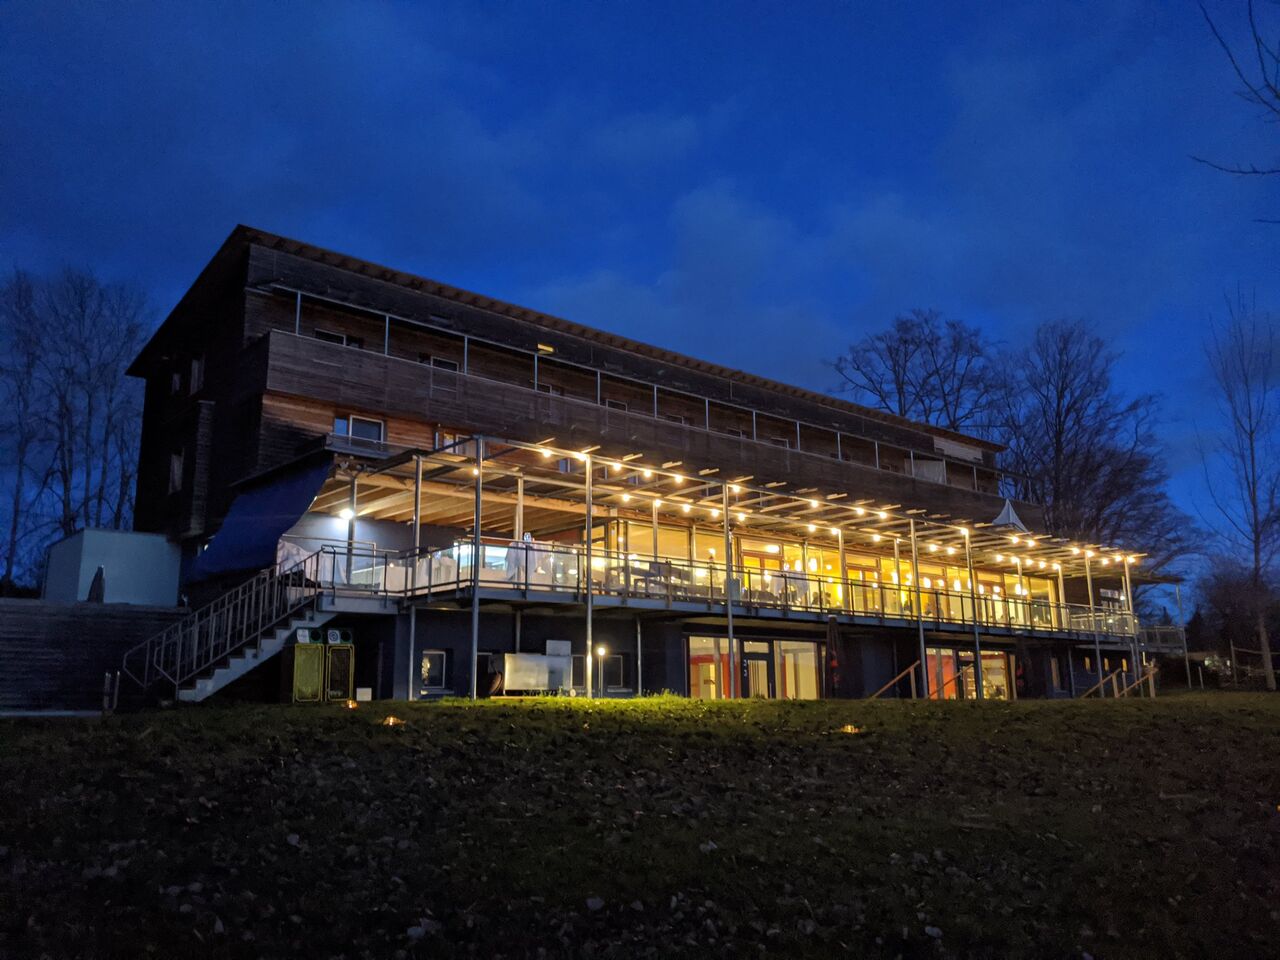 A photo of NaturFreundehaus